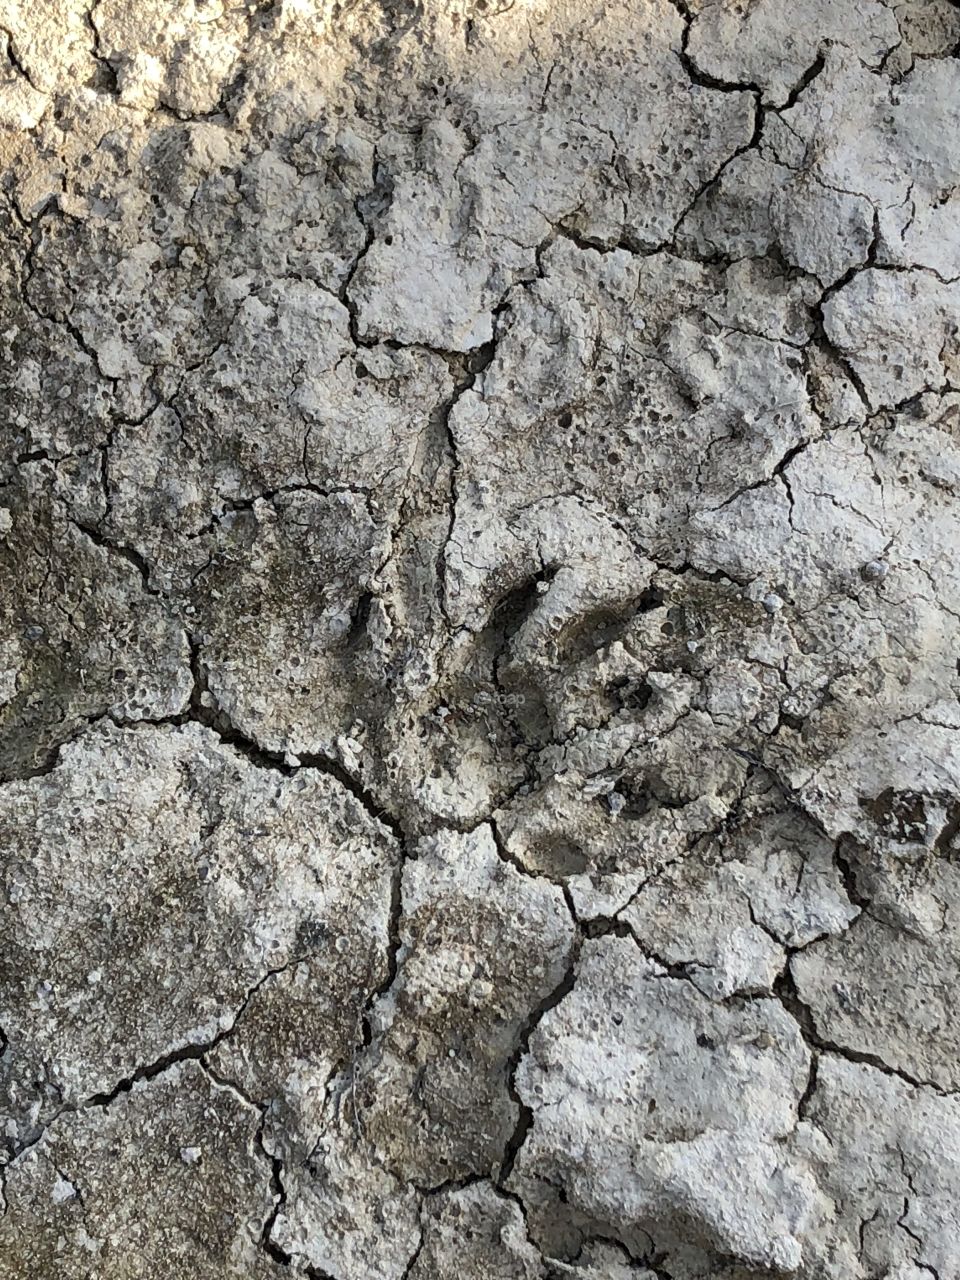 Raccoon print in the mud